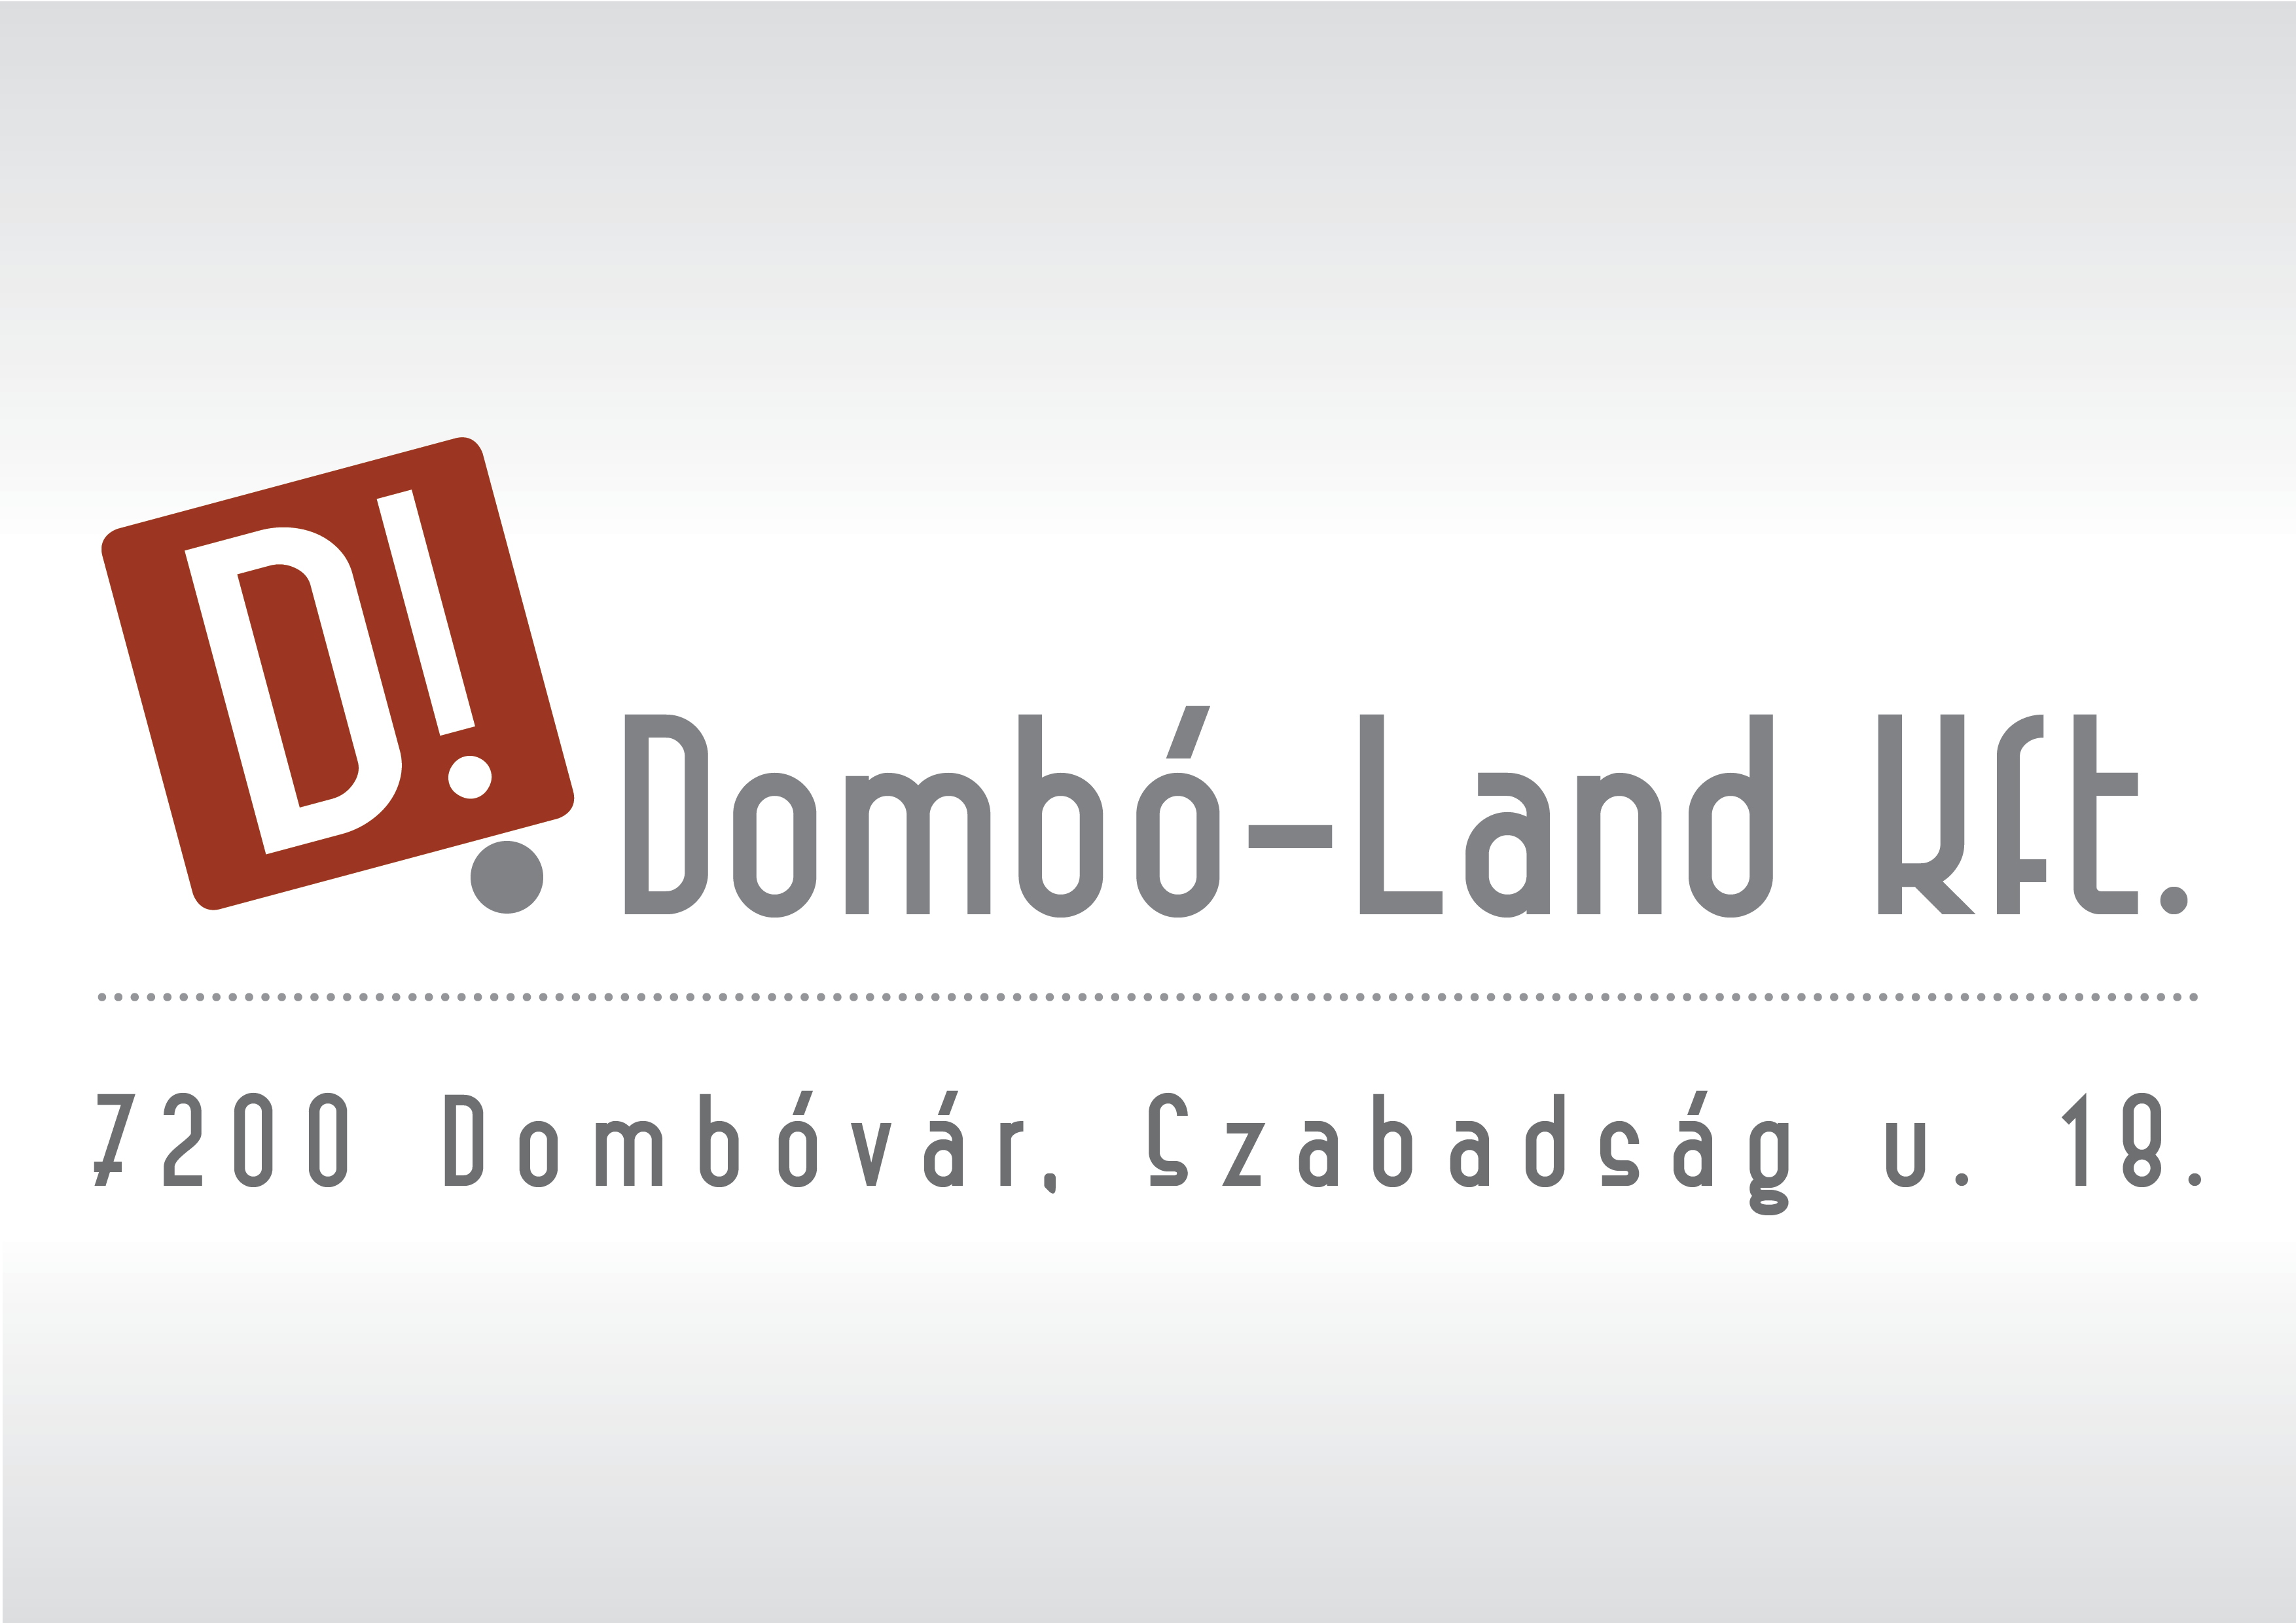 Dombó-Land Térségfejlesztő Korlátolt Felelősségű Társaság 7200 Dombóvár, Szabadság u. 18.